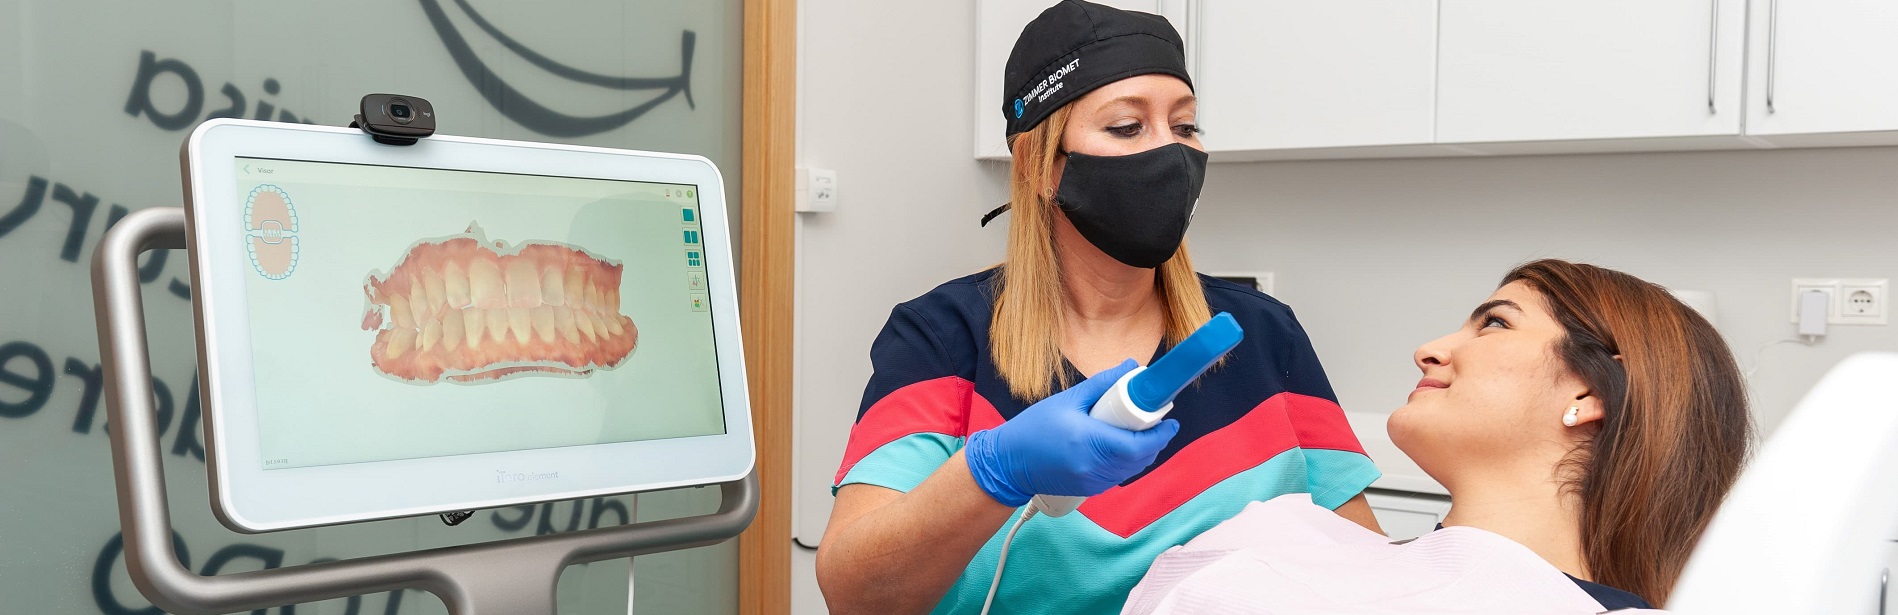 Última tecnología digital en Clínica dental Parracía